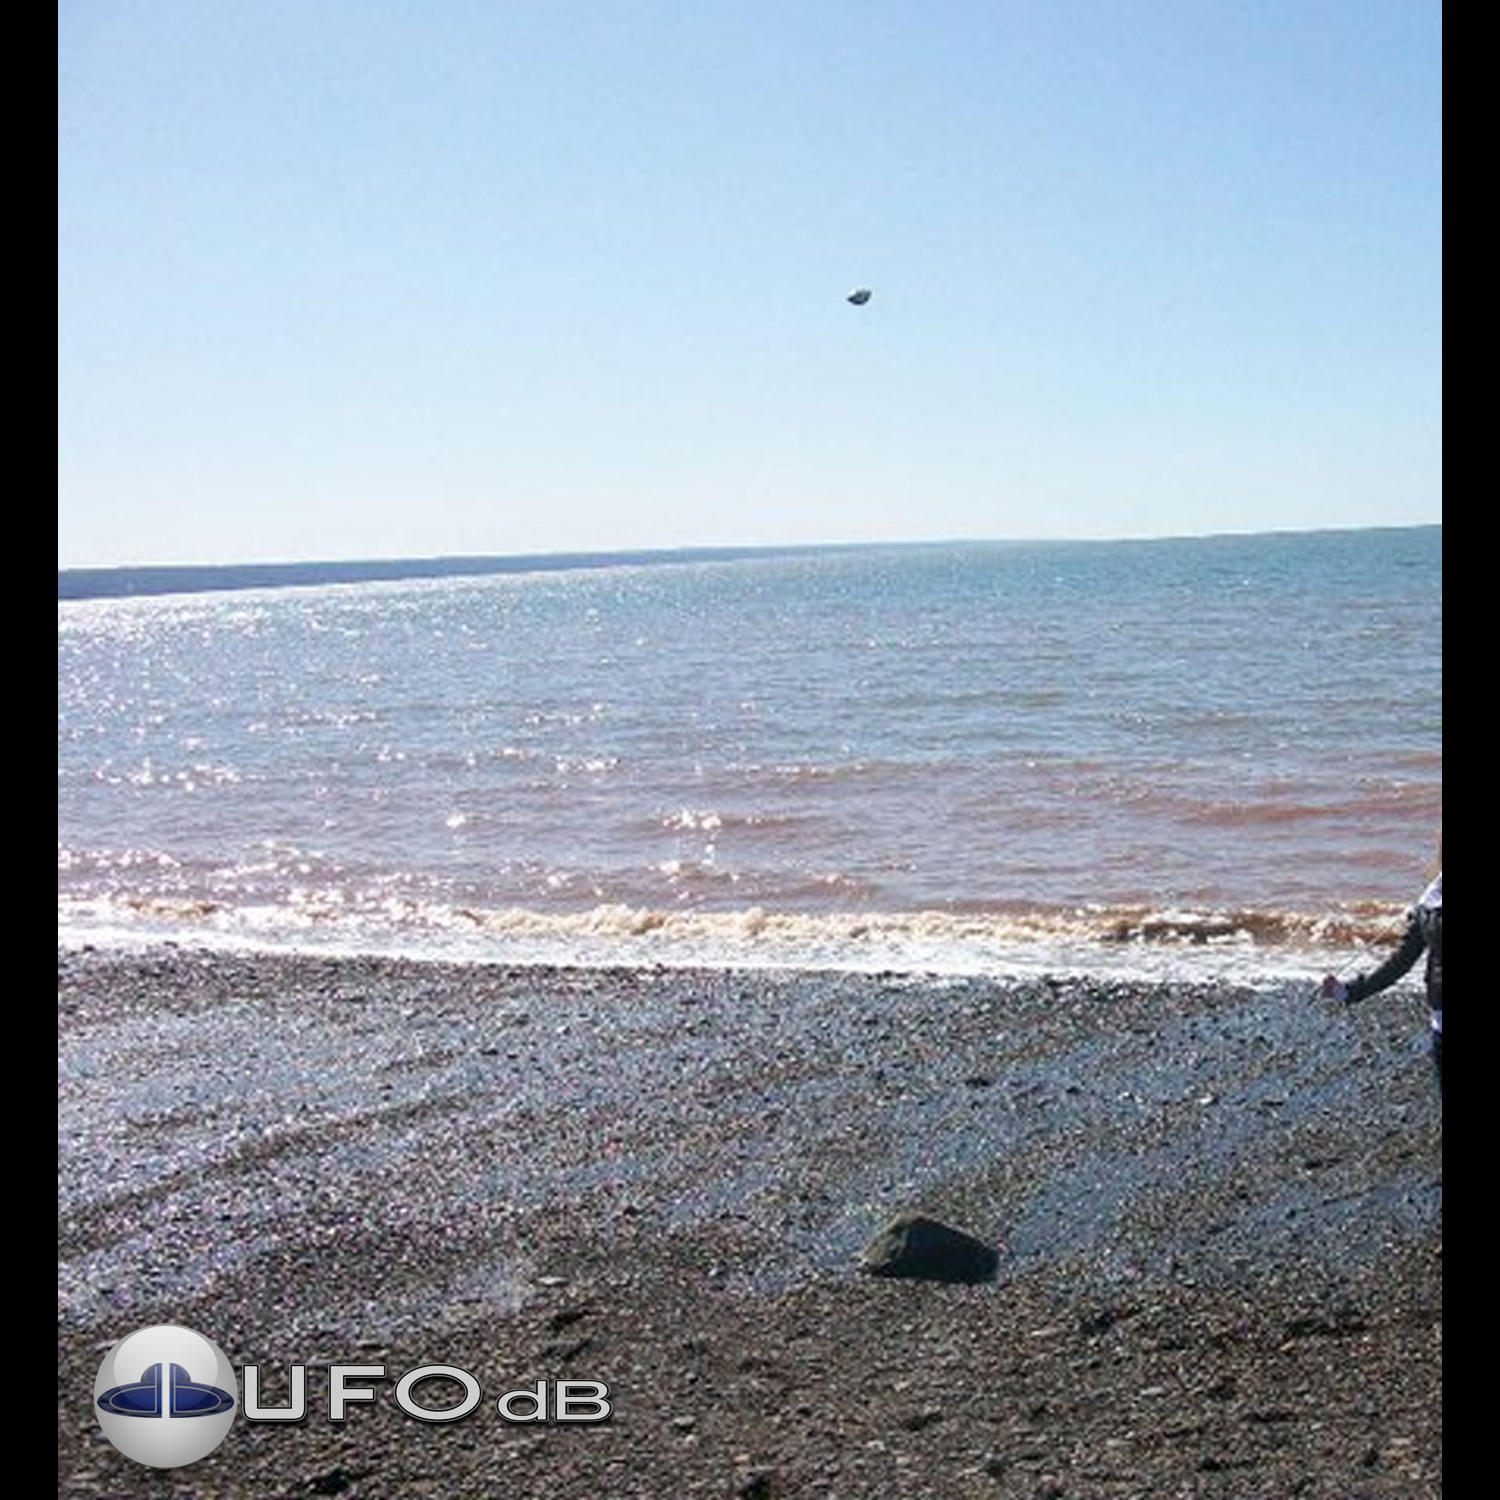 Nova Scotia, Canada - UFO near shore Bay of Fundy, Wolfville | 2011 UFO Picture #230-1